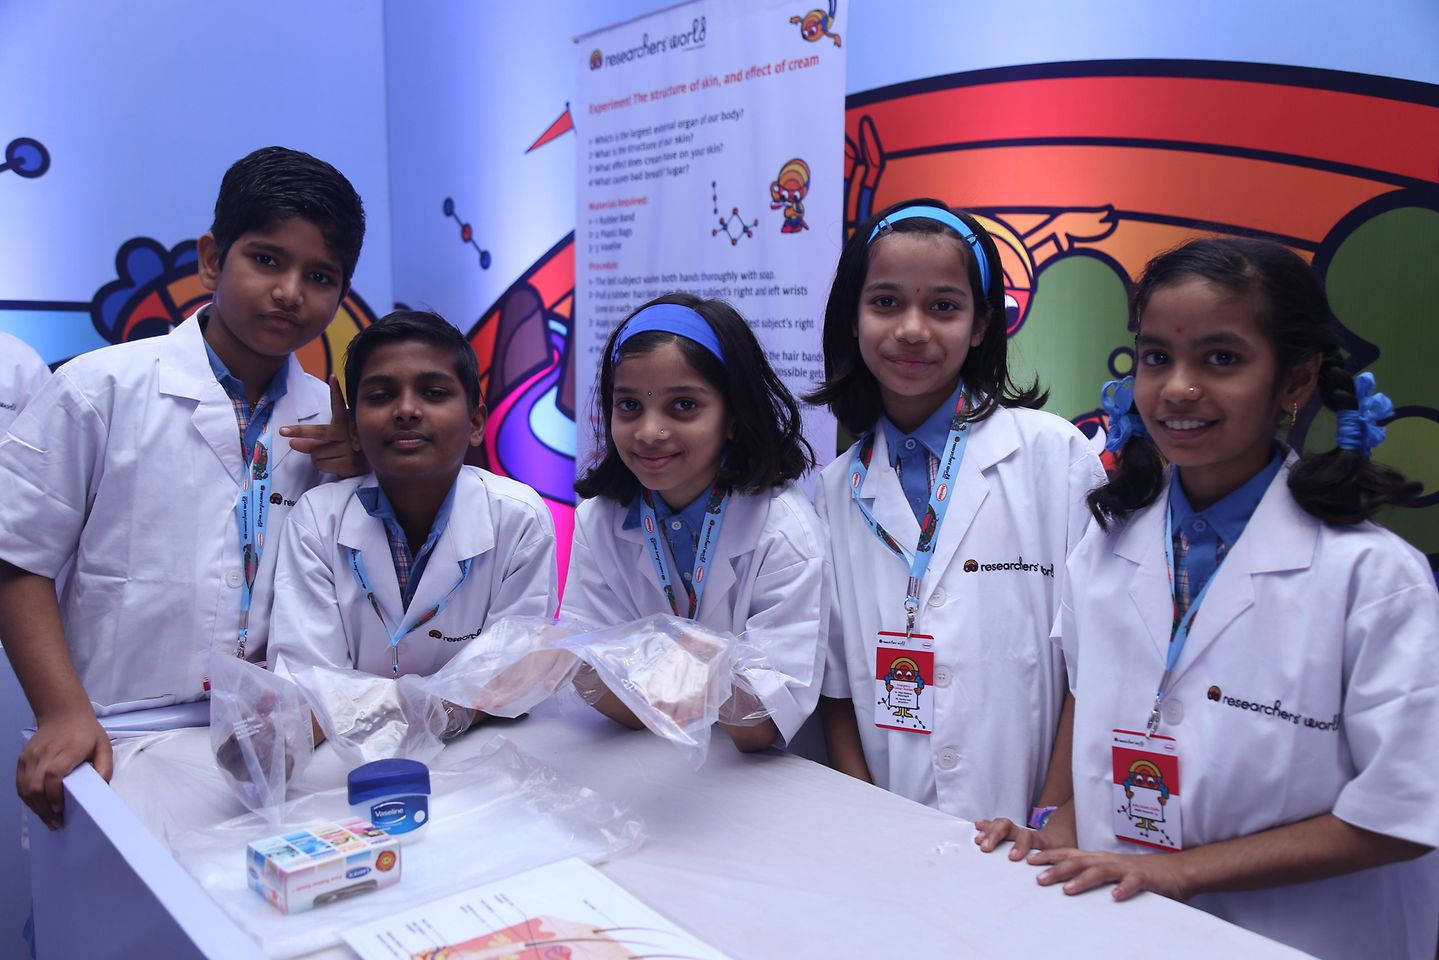 группа индийских детей в лабораторных халатах, стоящих за белым столом